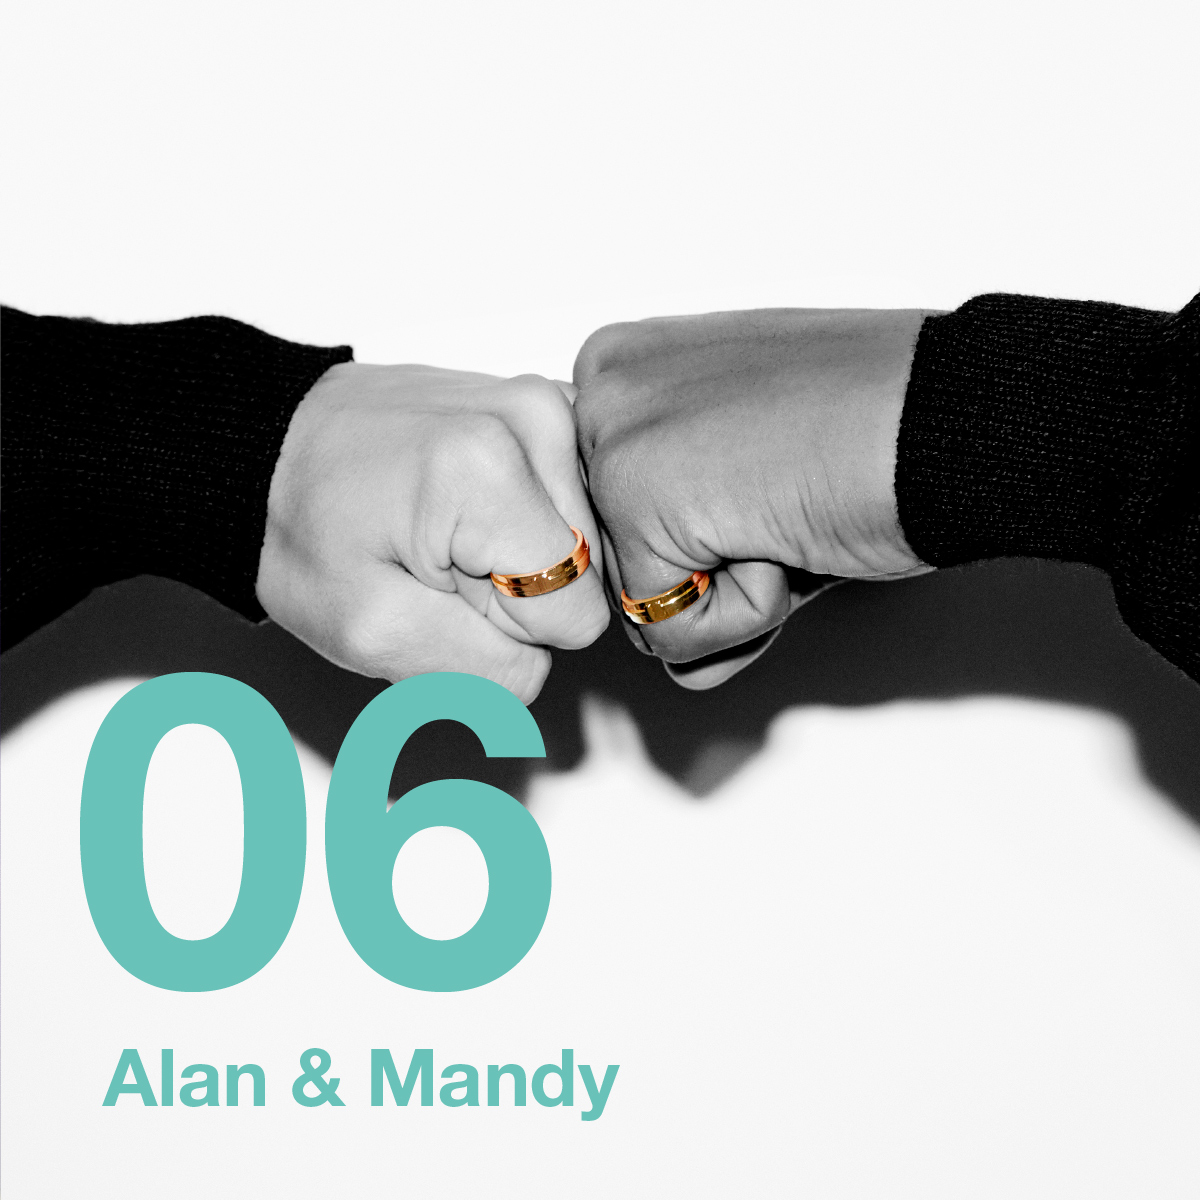 Aran & Mandy